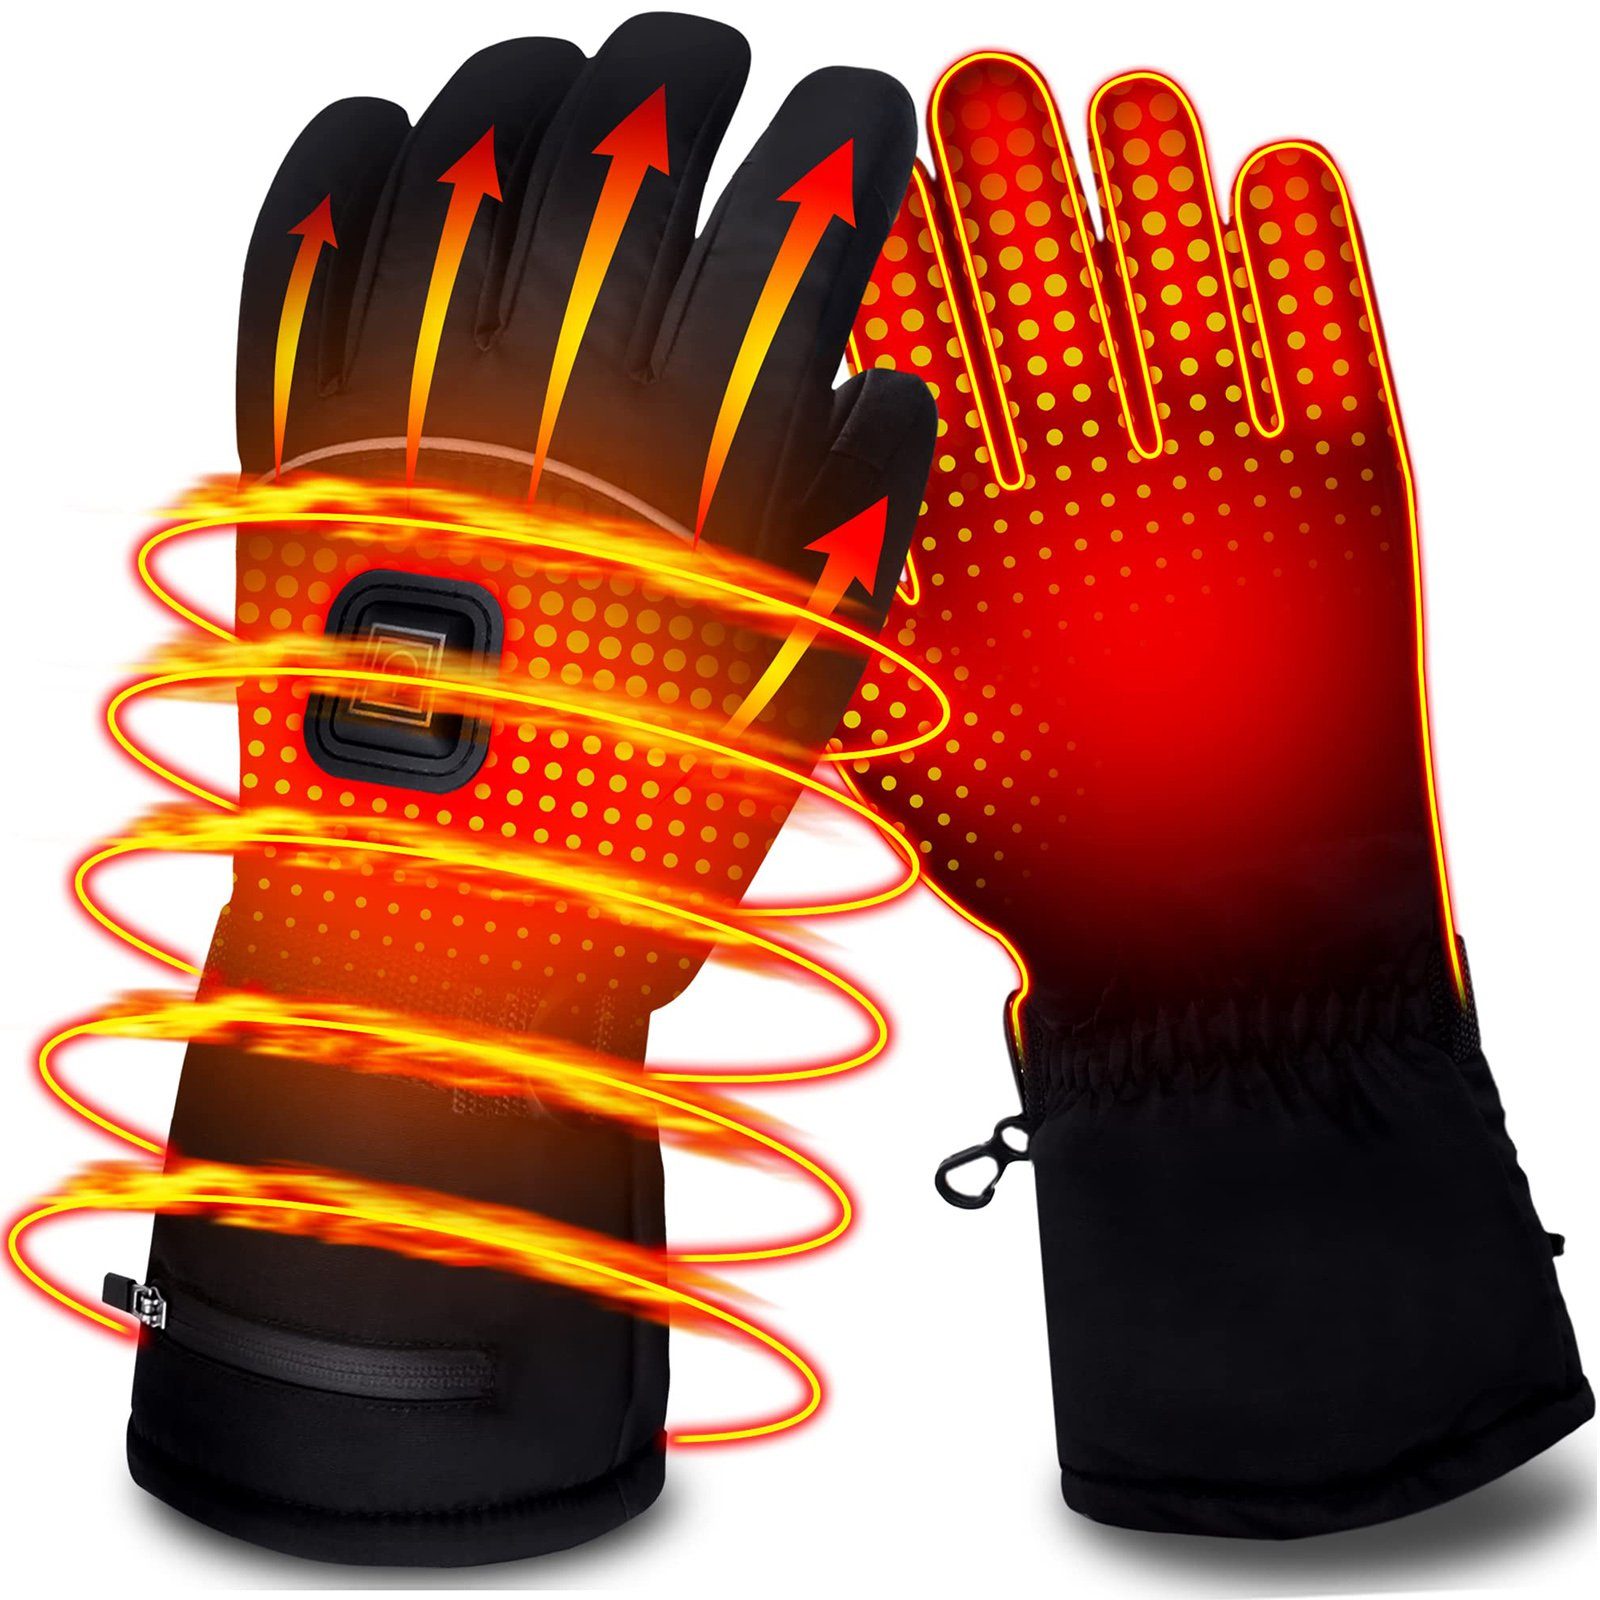 Multisporthandschuhe Beheizte Schwarz Handschuhe,Batterie,für Damen BTTO Laufen Handschuhe Radfahren Skifahren Winter,Skihandschuhe,Thermohandschuhe Herren